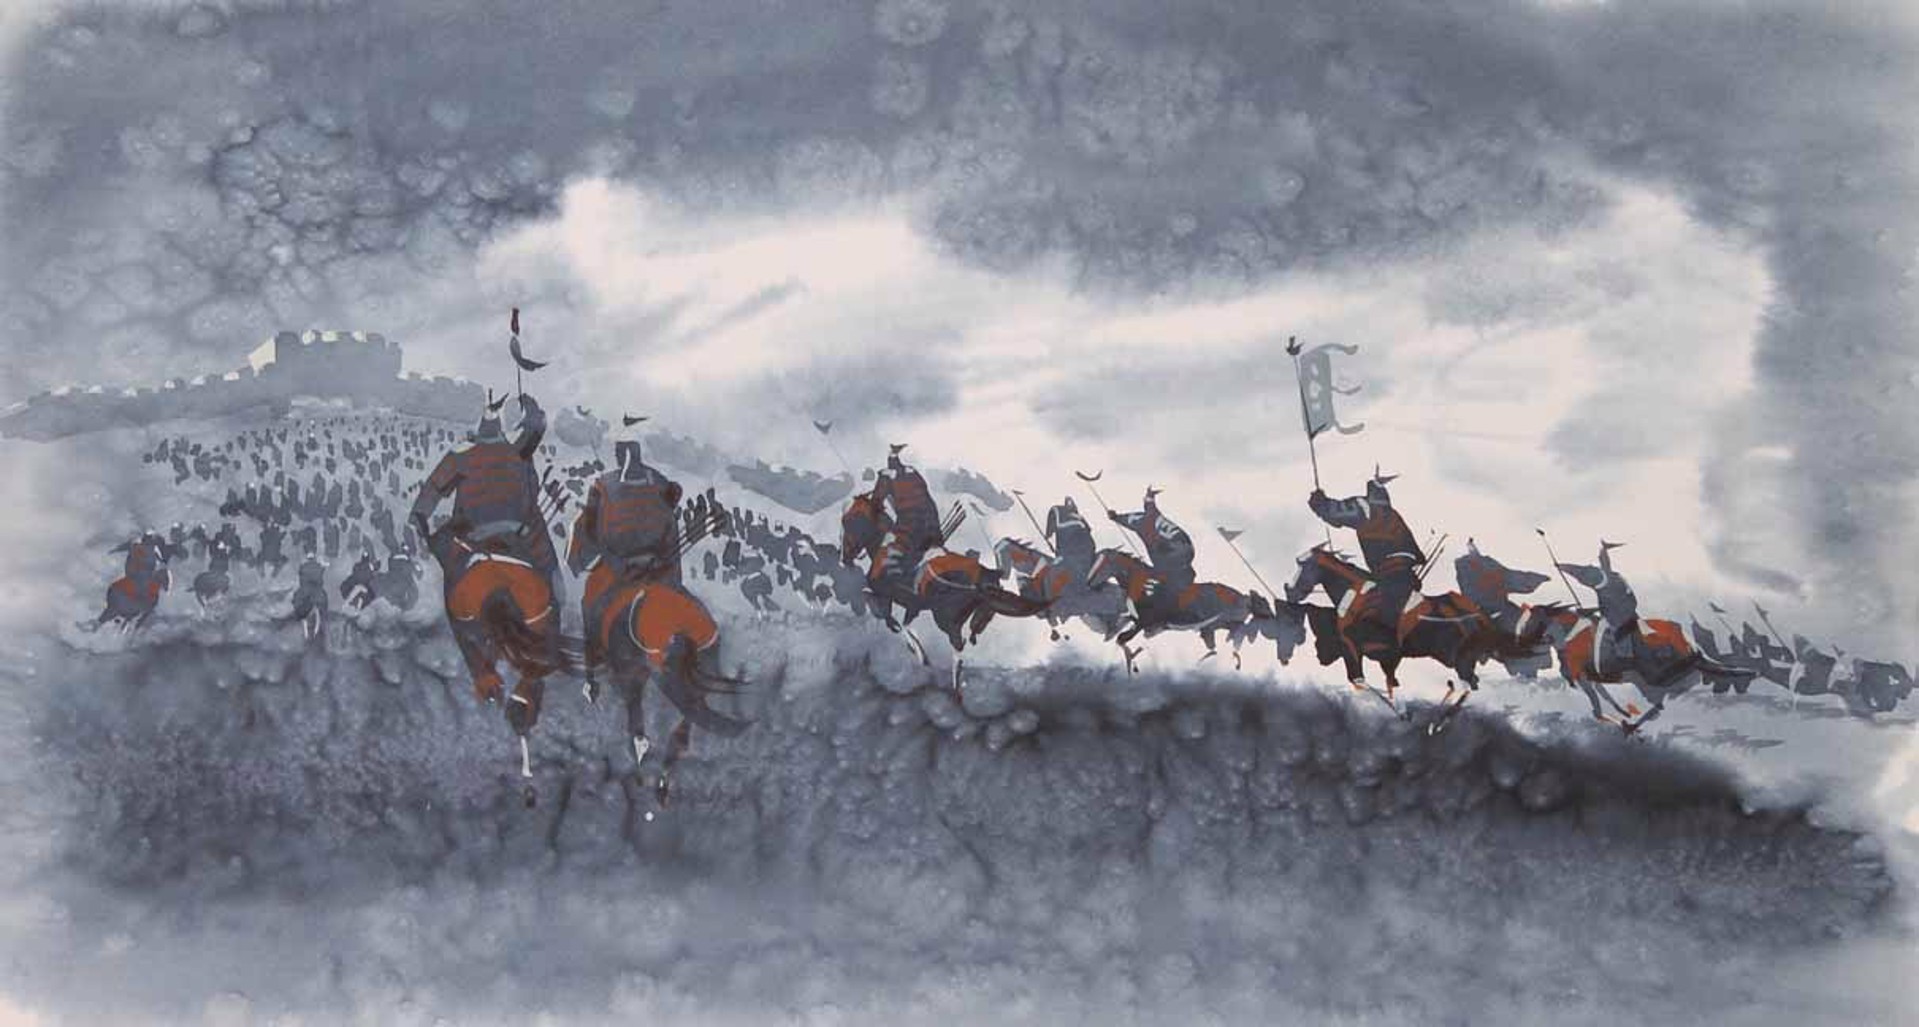 Mongol Cavalry 2 by Sambuu Zayasaikhan